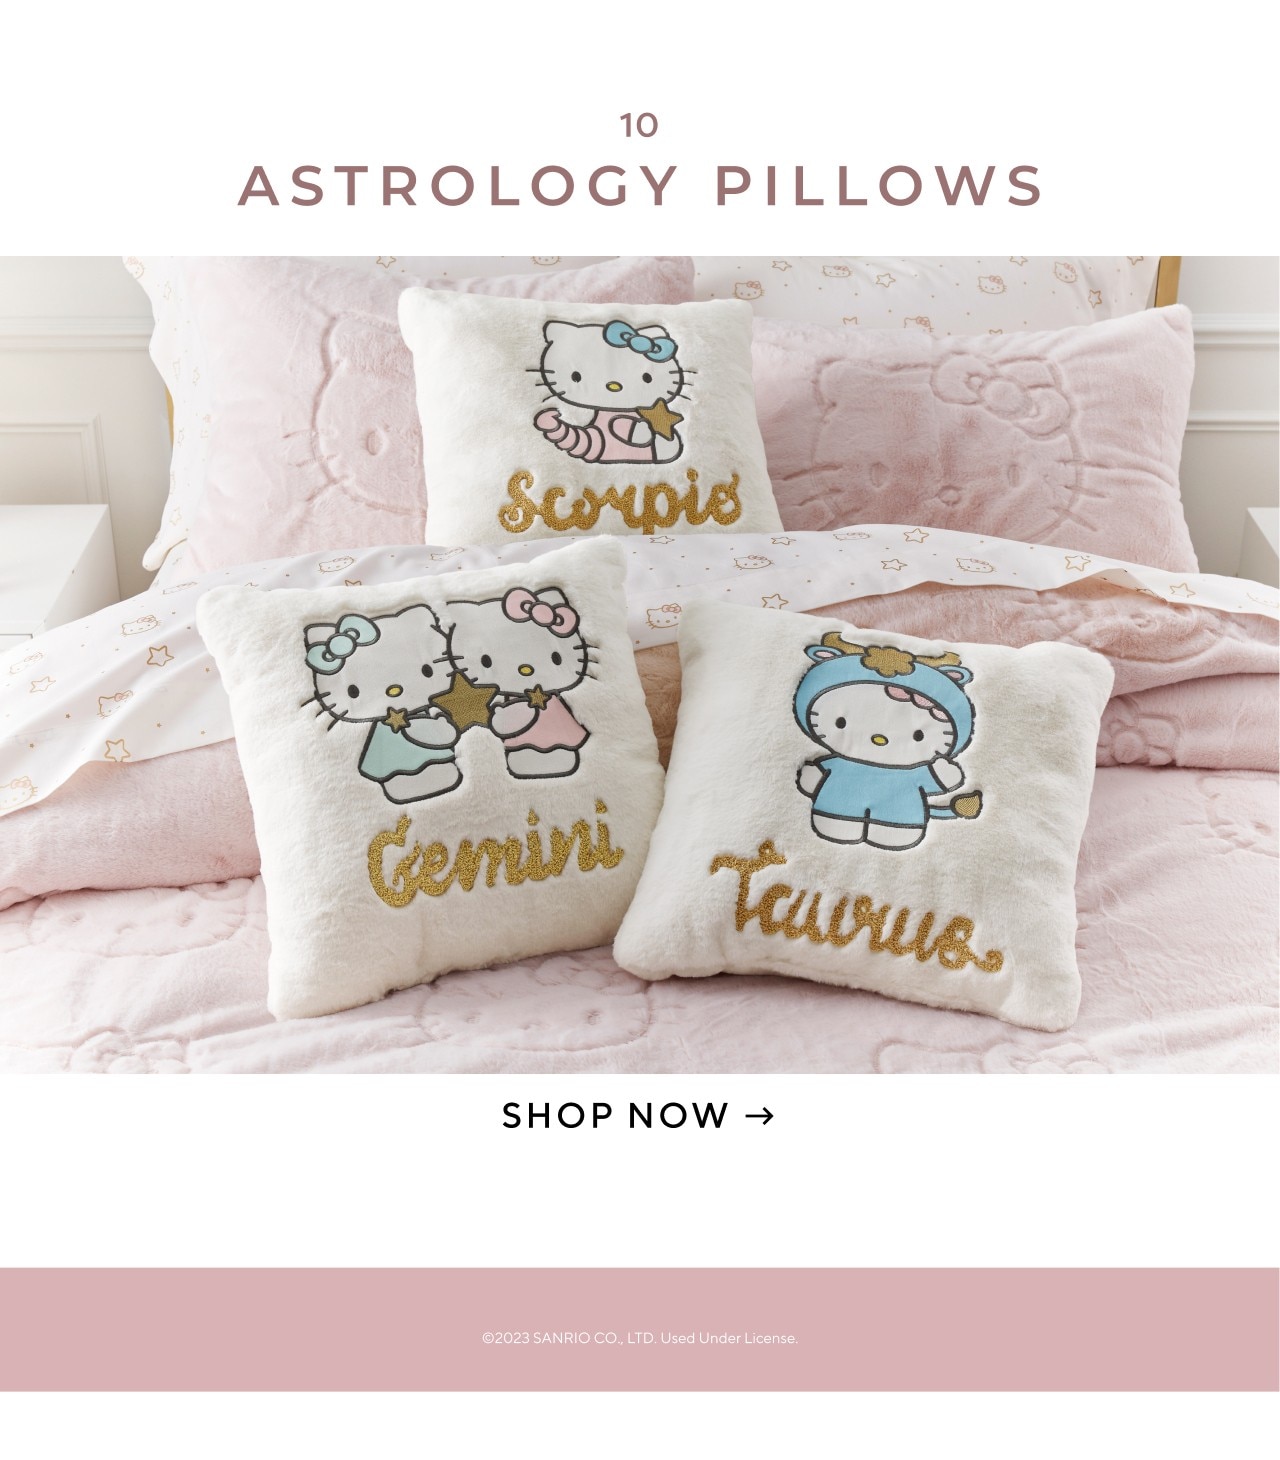 Astrology pillows